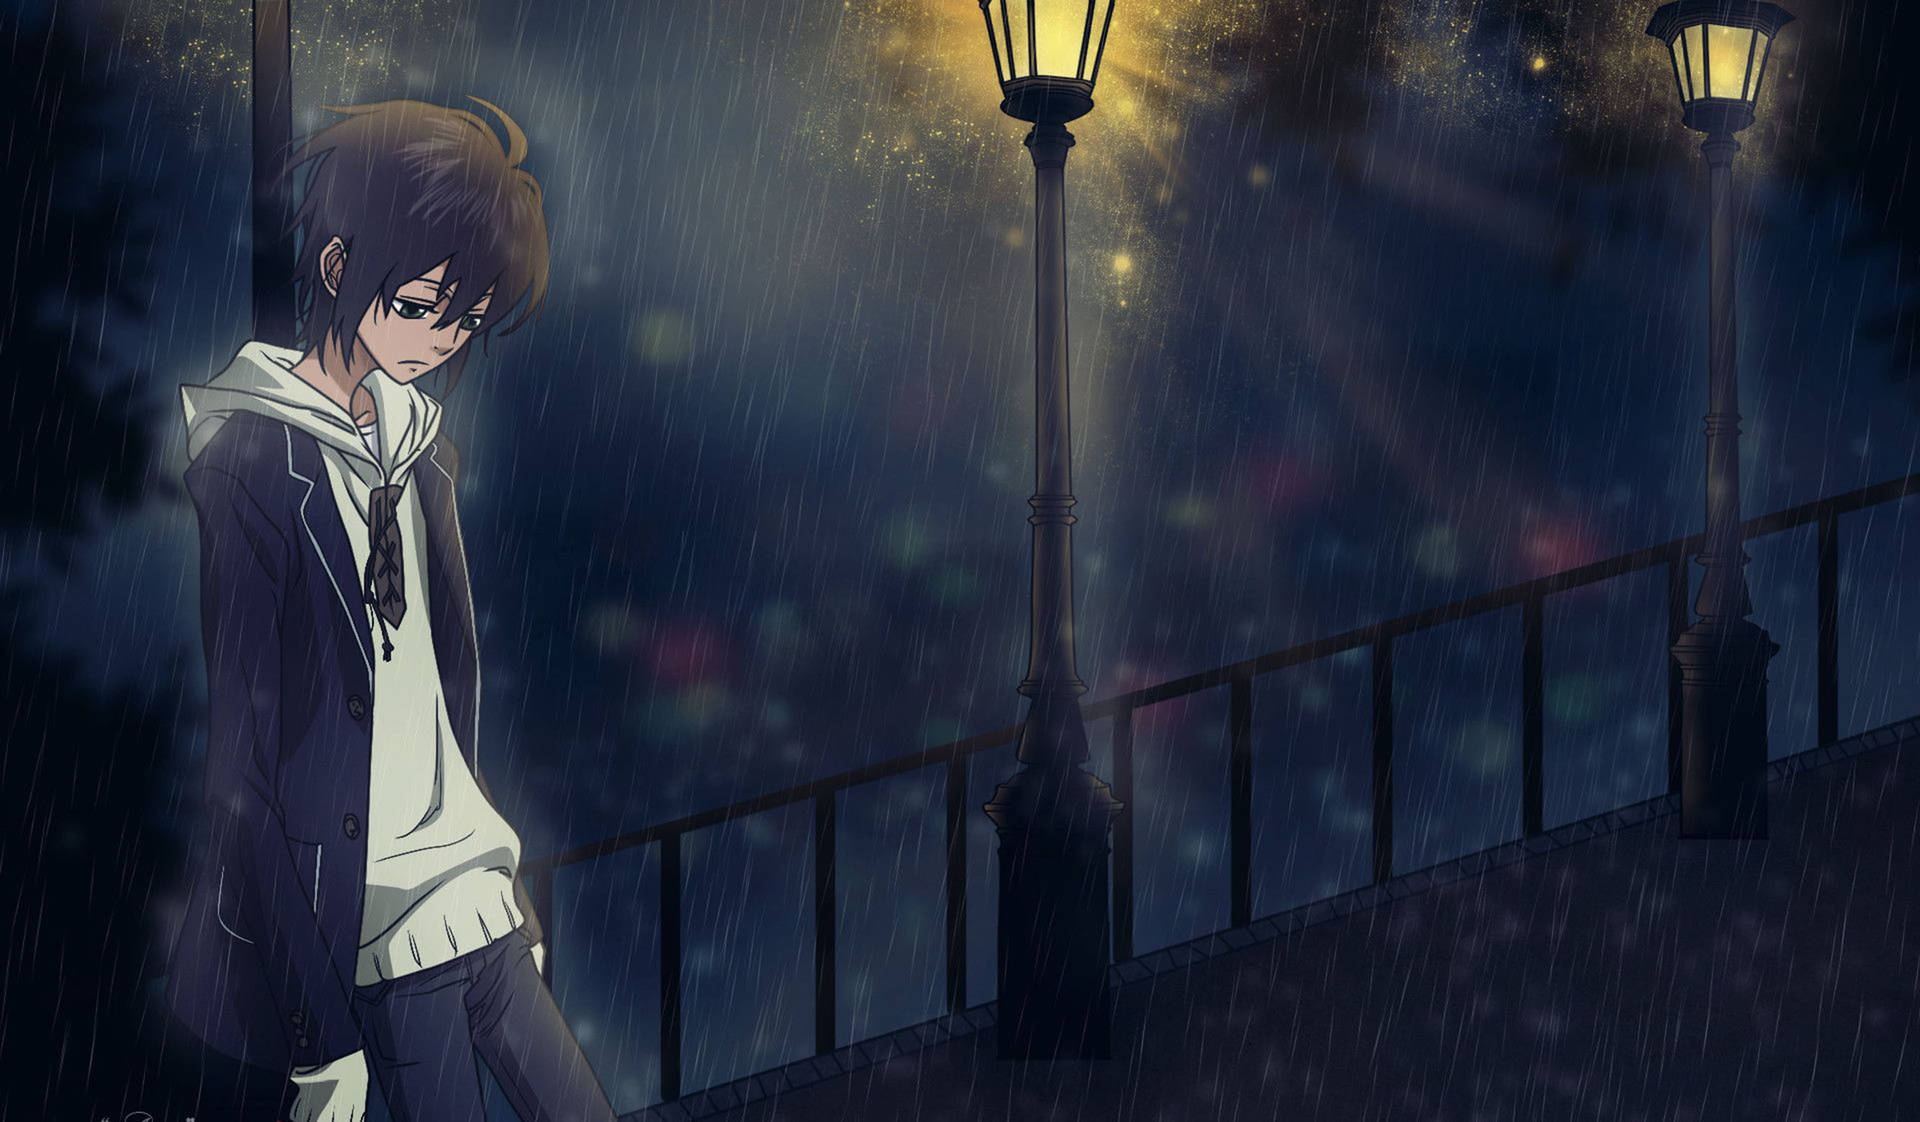 Sad Aesthetic Anime Boy Background